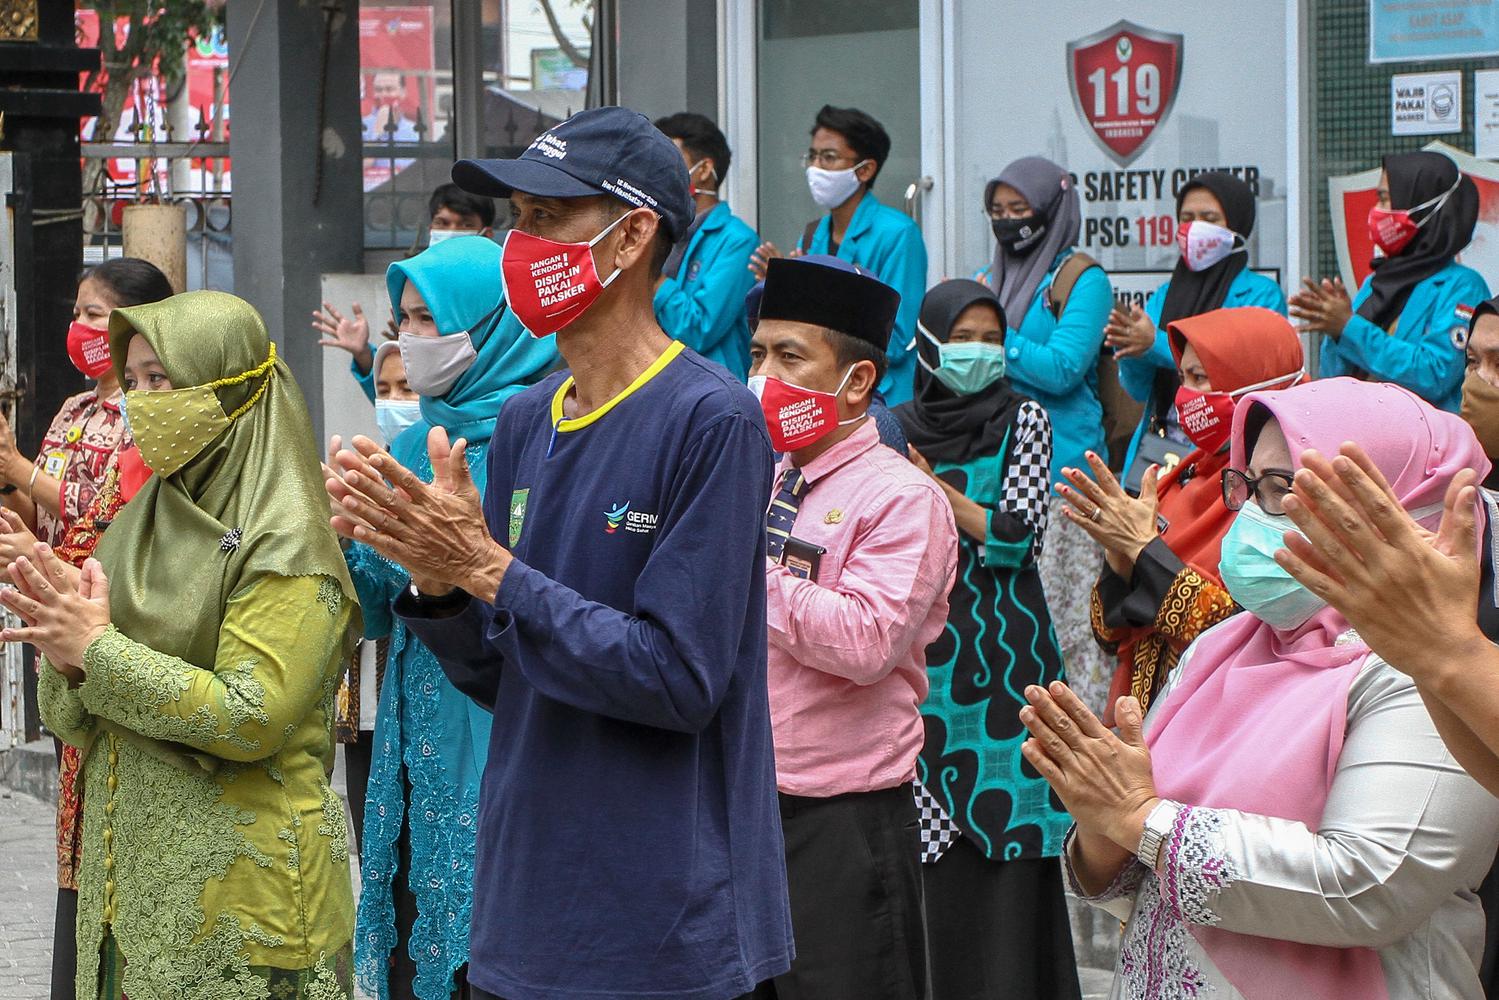 Pegawai Dinas Kesehatan Provinsi Riau bersama komunitas relawan peduli kesehatan bertepuk tangan selama 56 detik di halaman Kantor Dinkes Provinsi Riau di Pekanbaru, Riau, Kamis (12/11/2020). Selain untuk memperingati Hari Kesehatan Nasional ke-56, kegiatan tersebut juga sebagai bentuk apresiasi serta dukungan terhadap para seluruh petugas yang berjuang melawan COVID-19 dan juga kepada masyarakat yang telah melaksanakan protokol kesehatan.